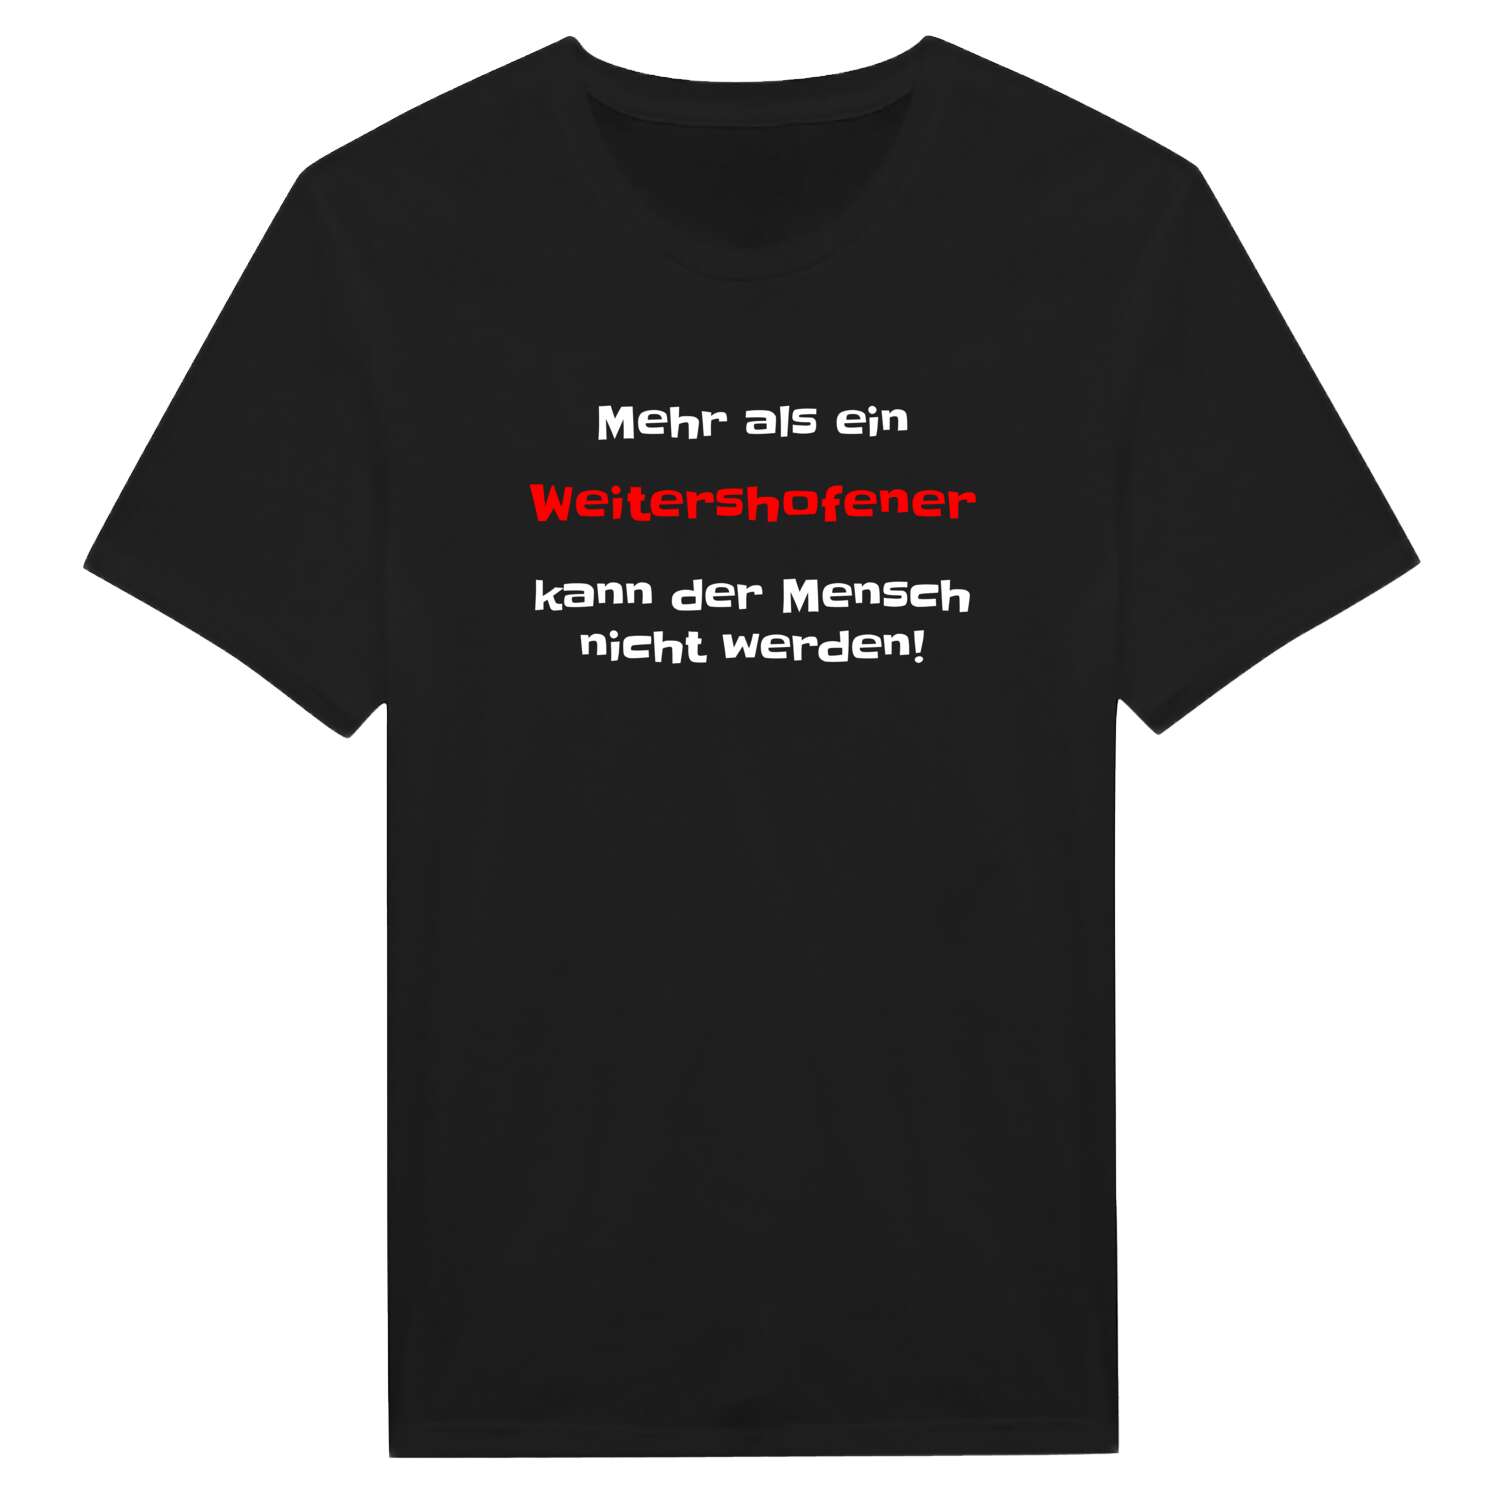 Weitershofen T-Shirt »Mehr als ein«